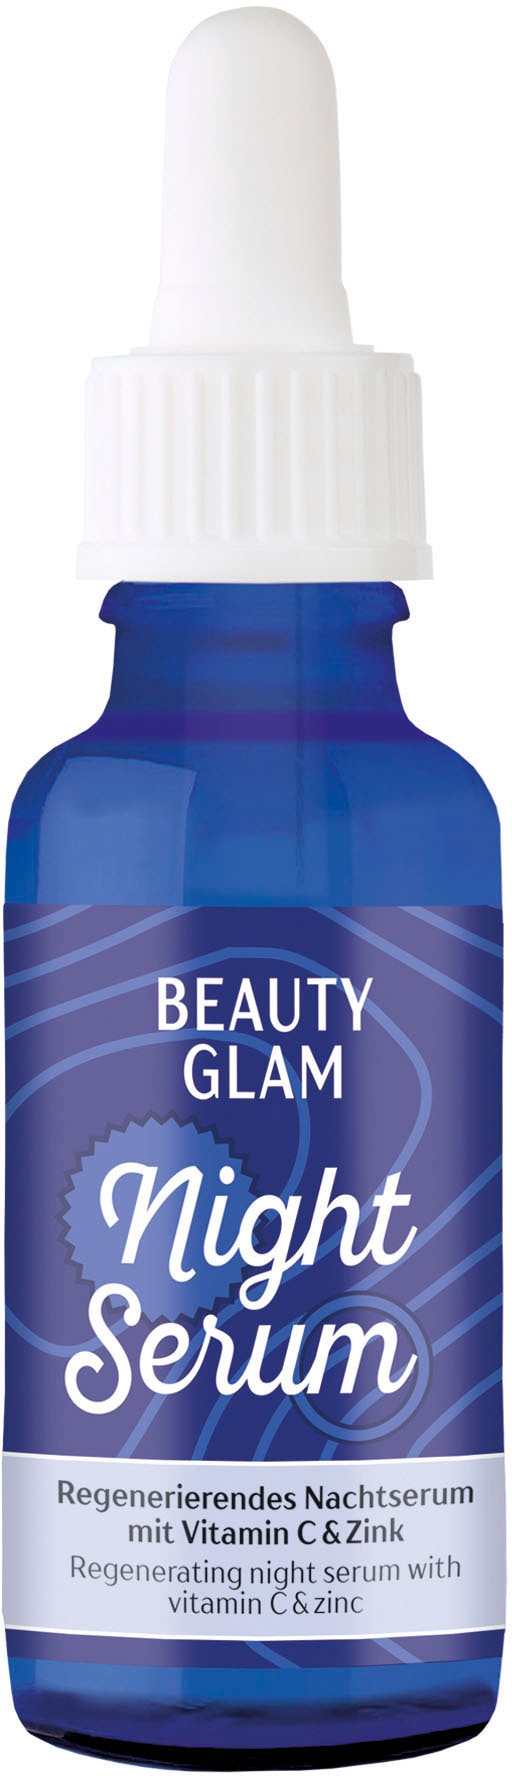 Serum« UNIVERSAL Gesichtsserum Night »Beauty GLAM BEAUTY | Glam bestellen